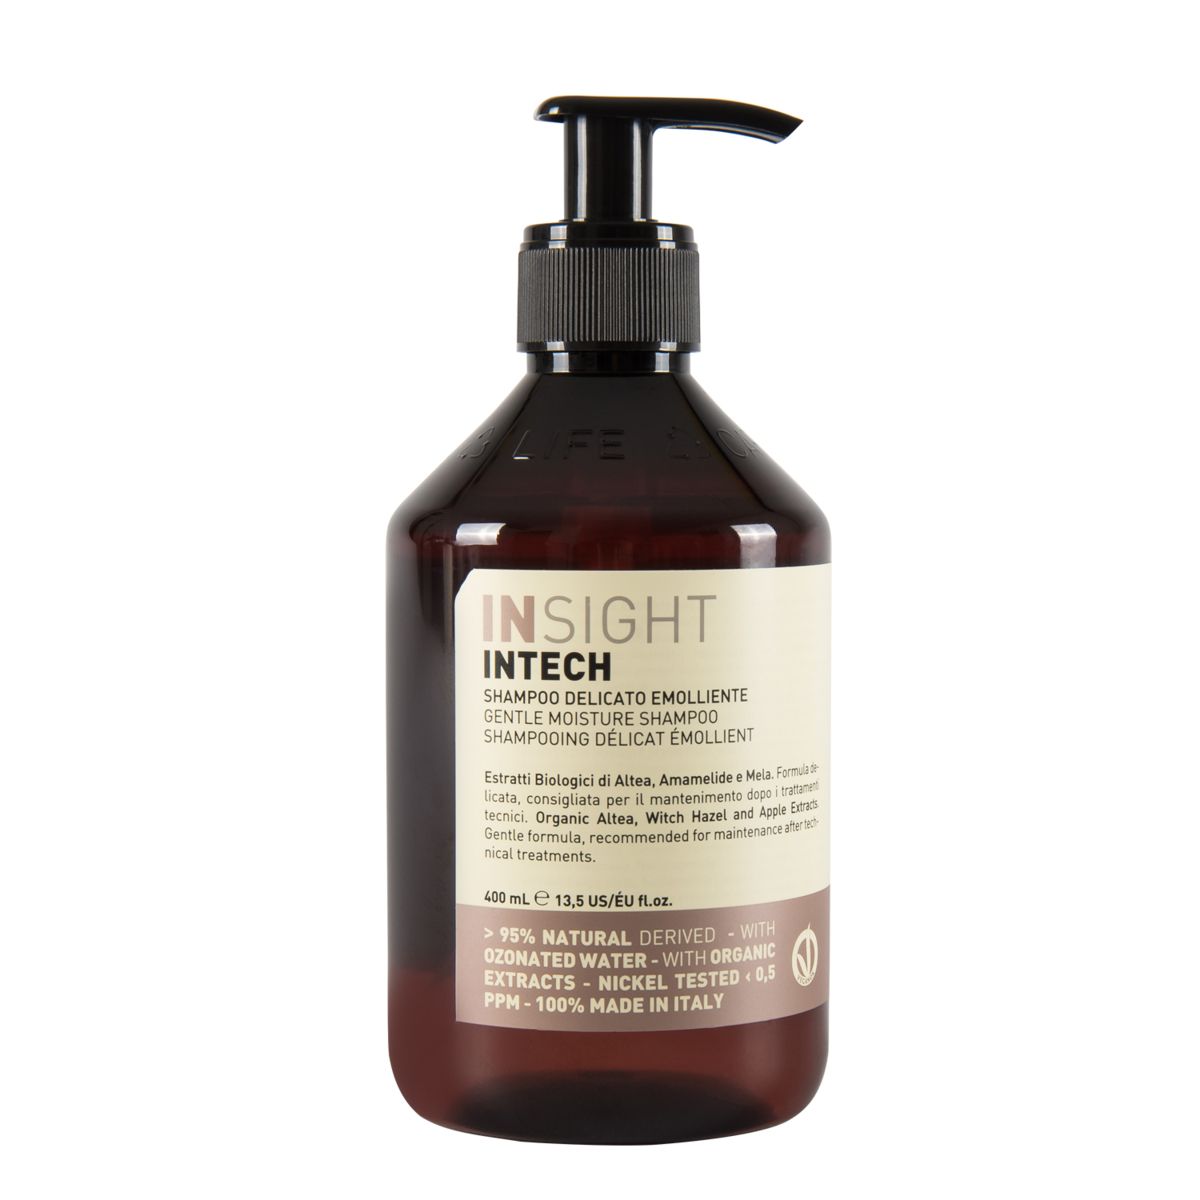 Insight Intech Gentle Moisture Shampoo - jemný hydratační šampon 400 ml